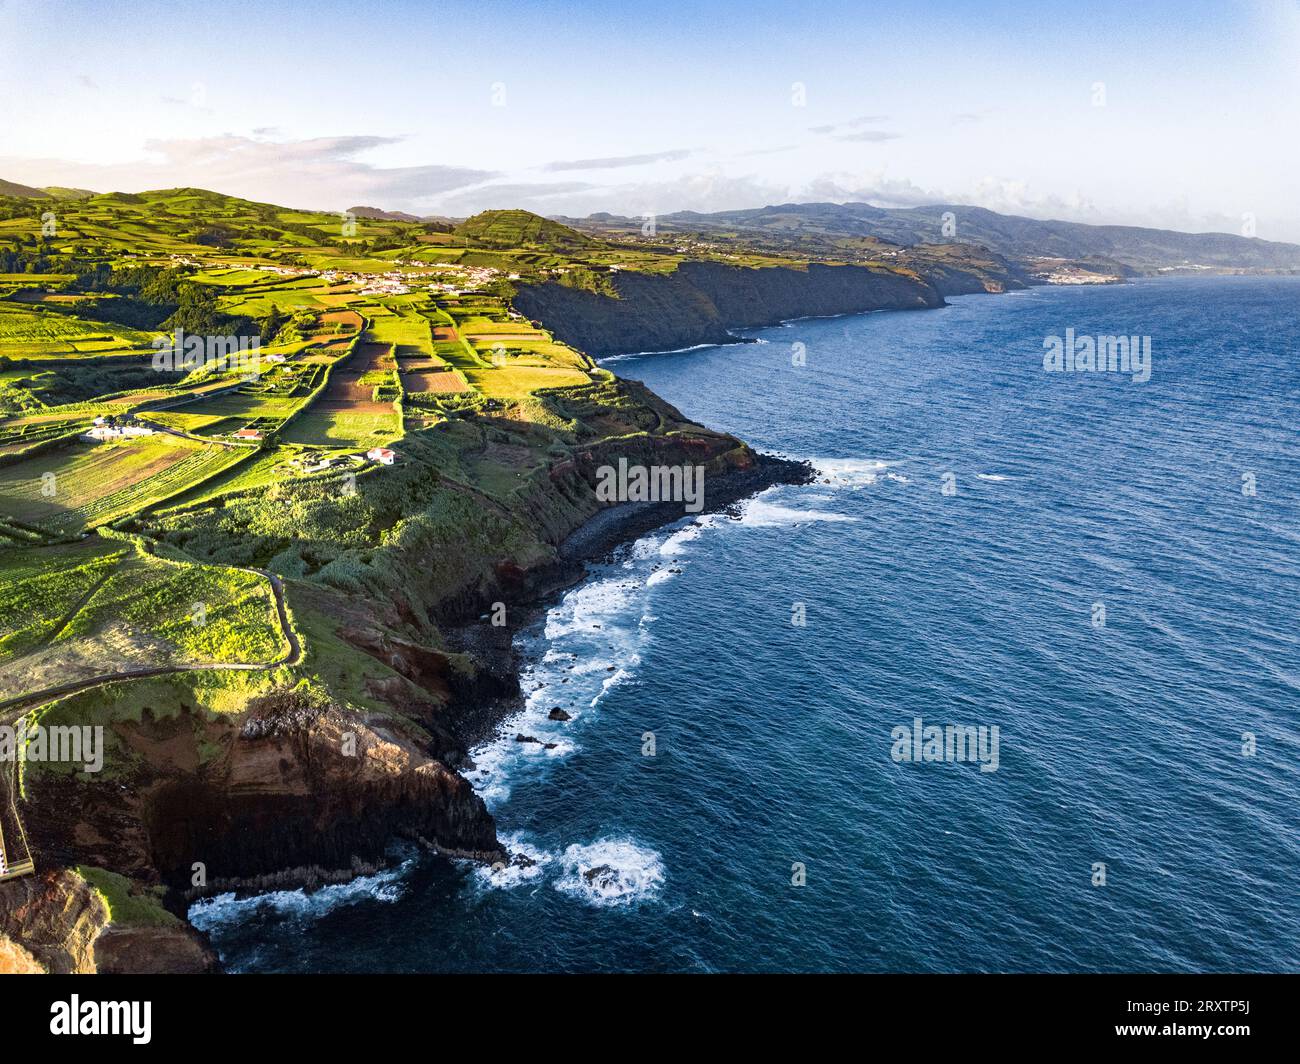 Vista aerea delle coste e della costa di Sao Miguel, delle isole Azzorre, del Portogallo, dell'Atlantico e dell'Europa Foto Stock